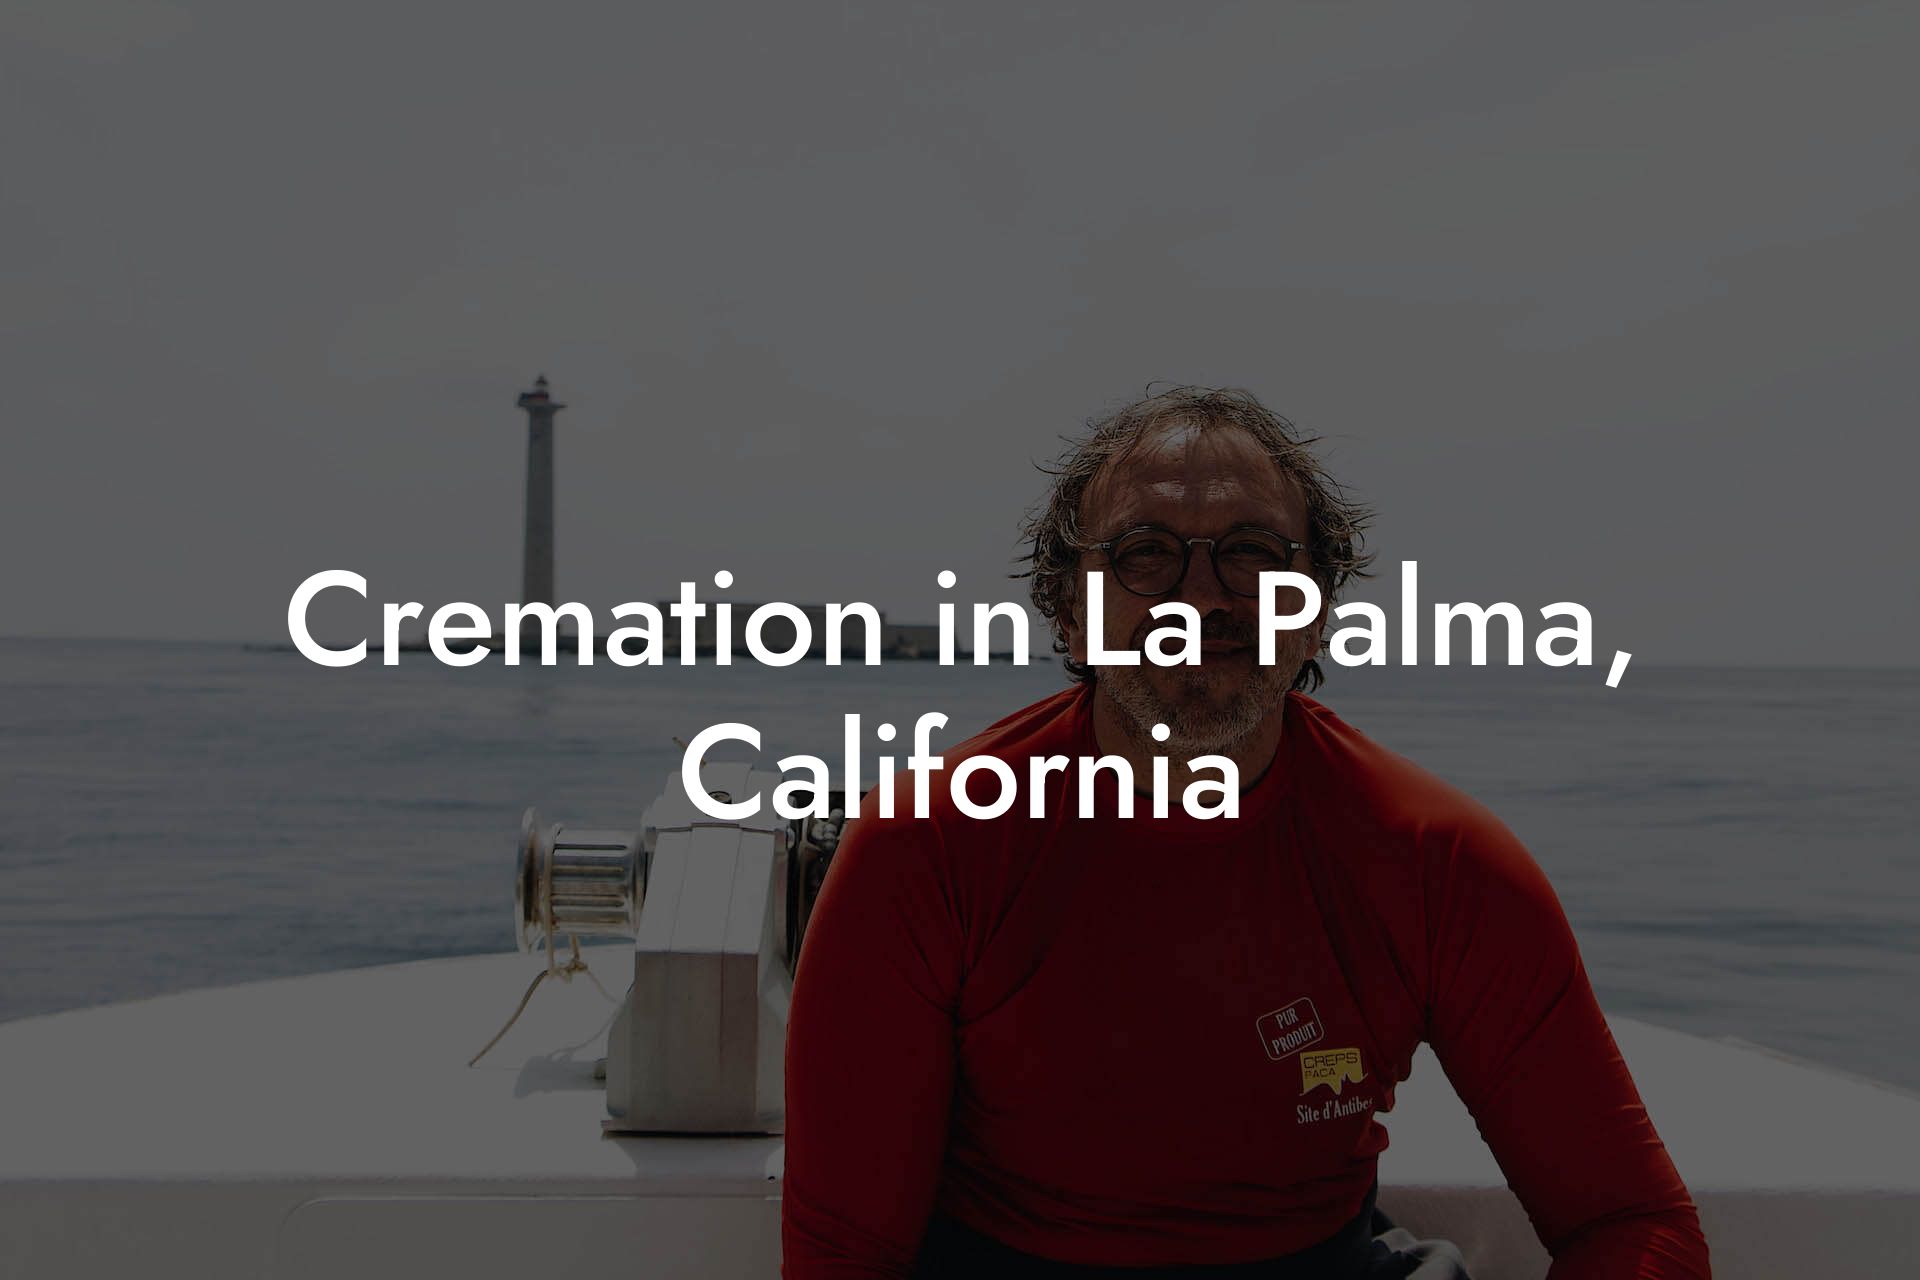 Cremation in La Palma, California